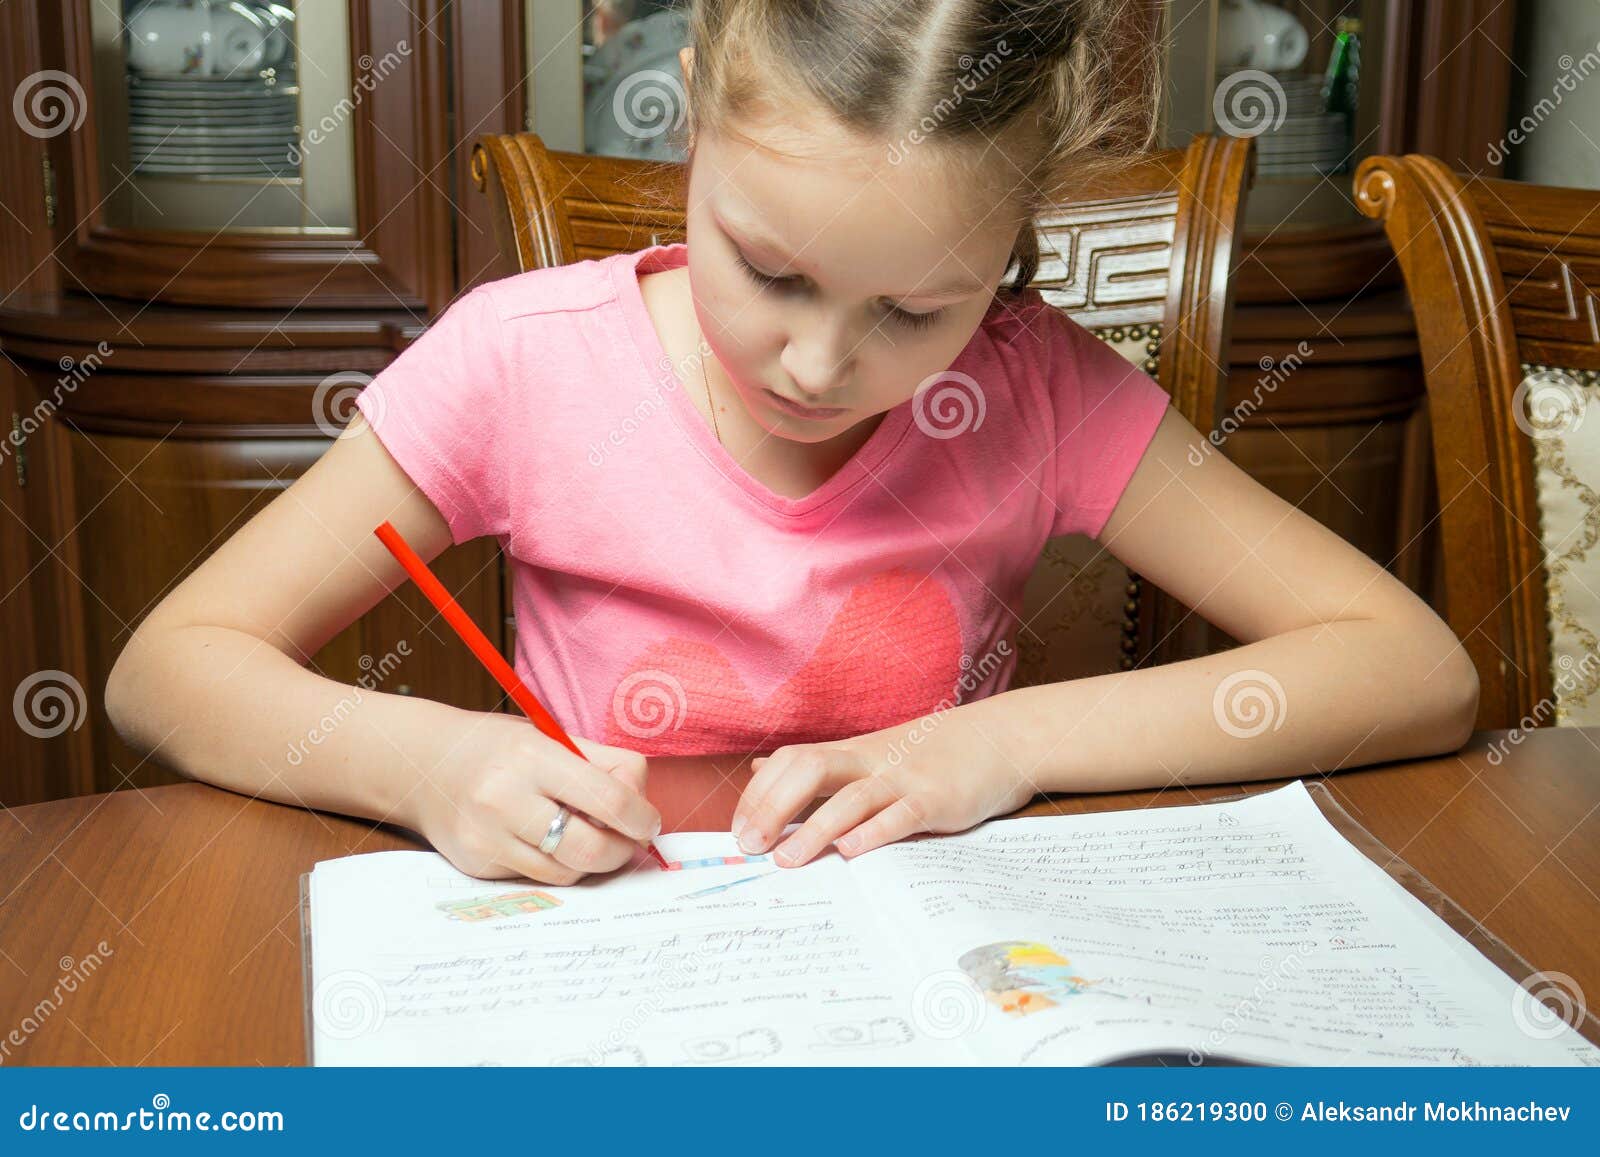 Little Girl Doing her Homework · Free Stock Photo